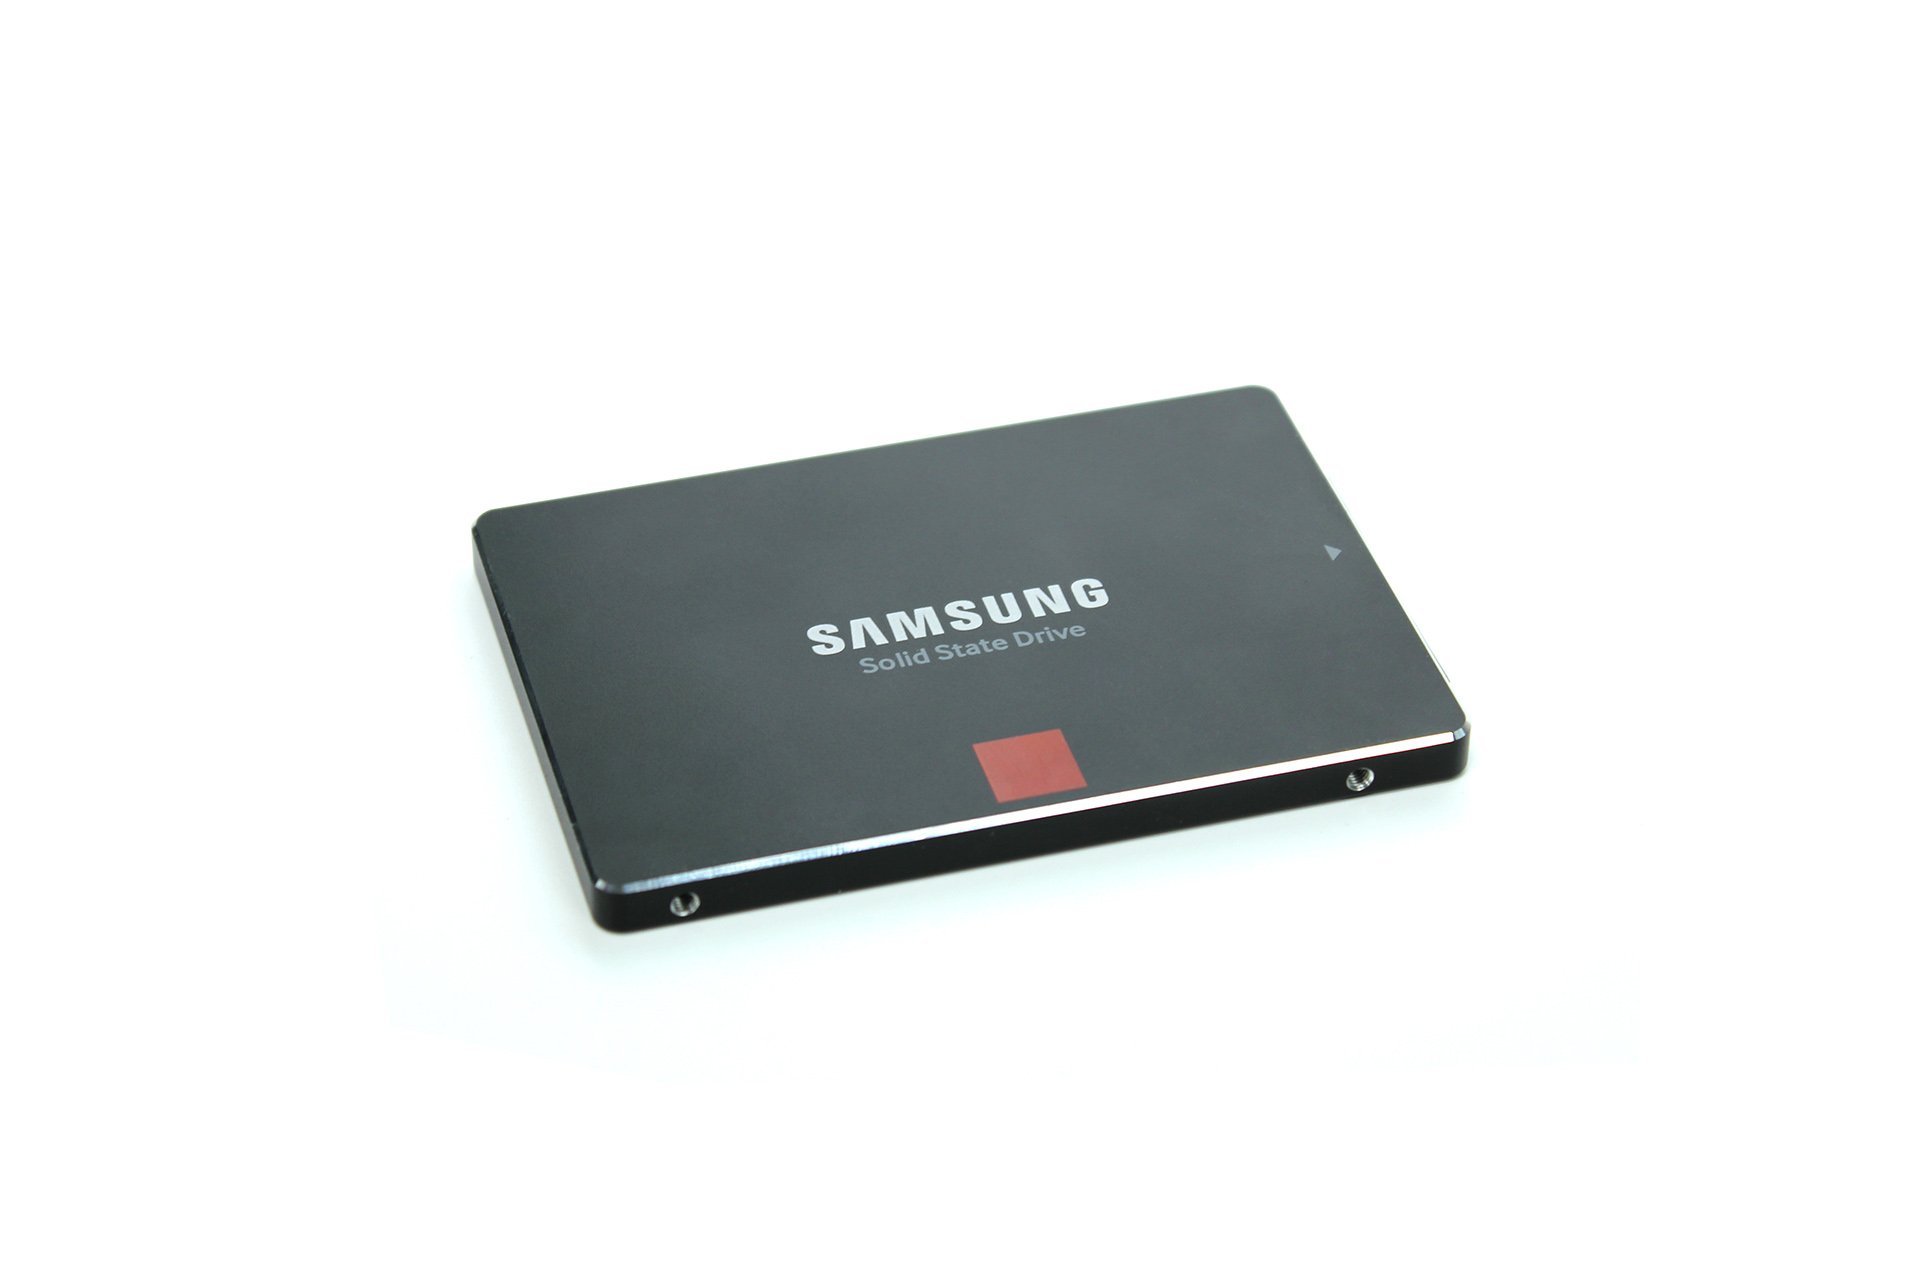 Samsung SSD 850 Pro 256 GB - Draufsicht